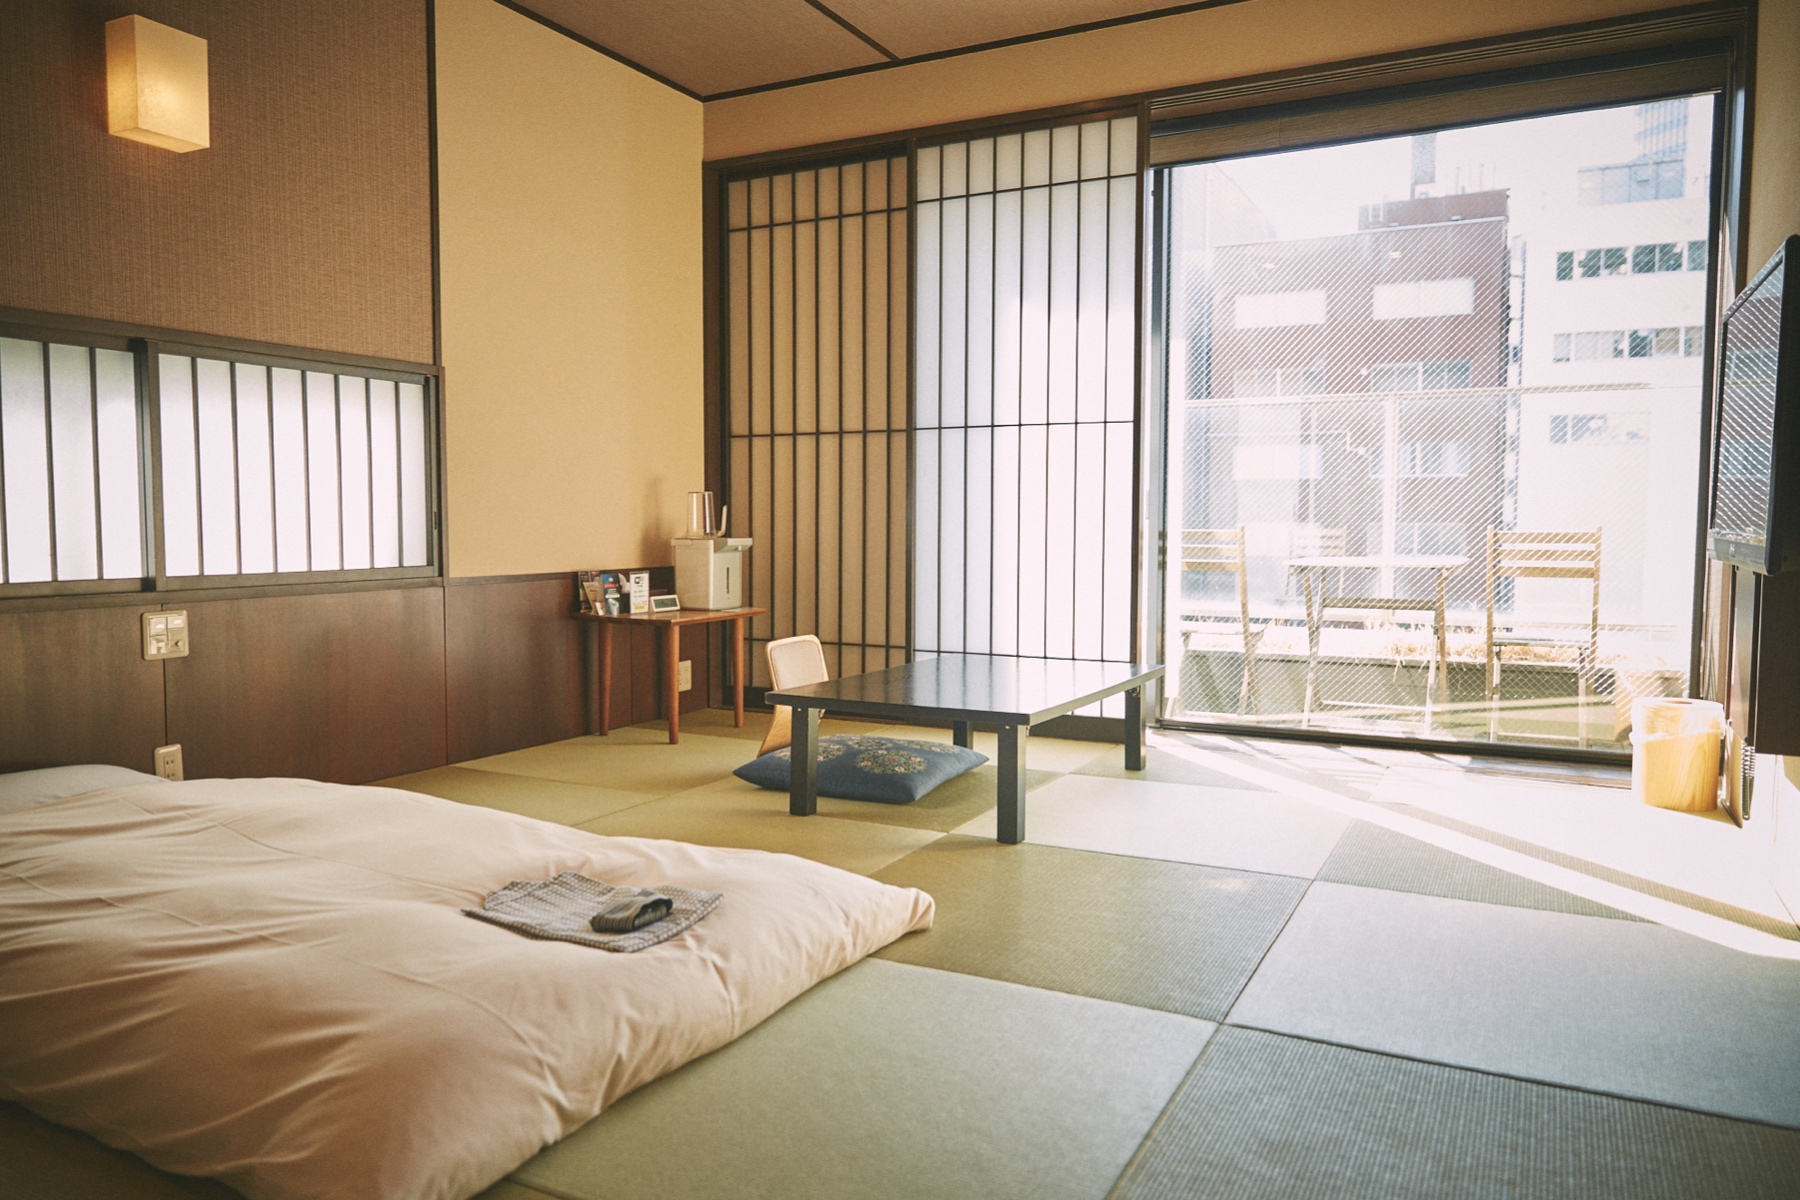 升龙馆酒店的客房拥有现代和传统的日式设计